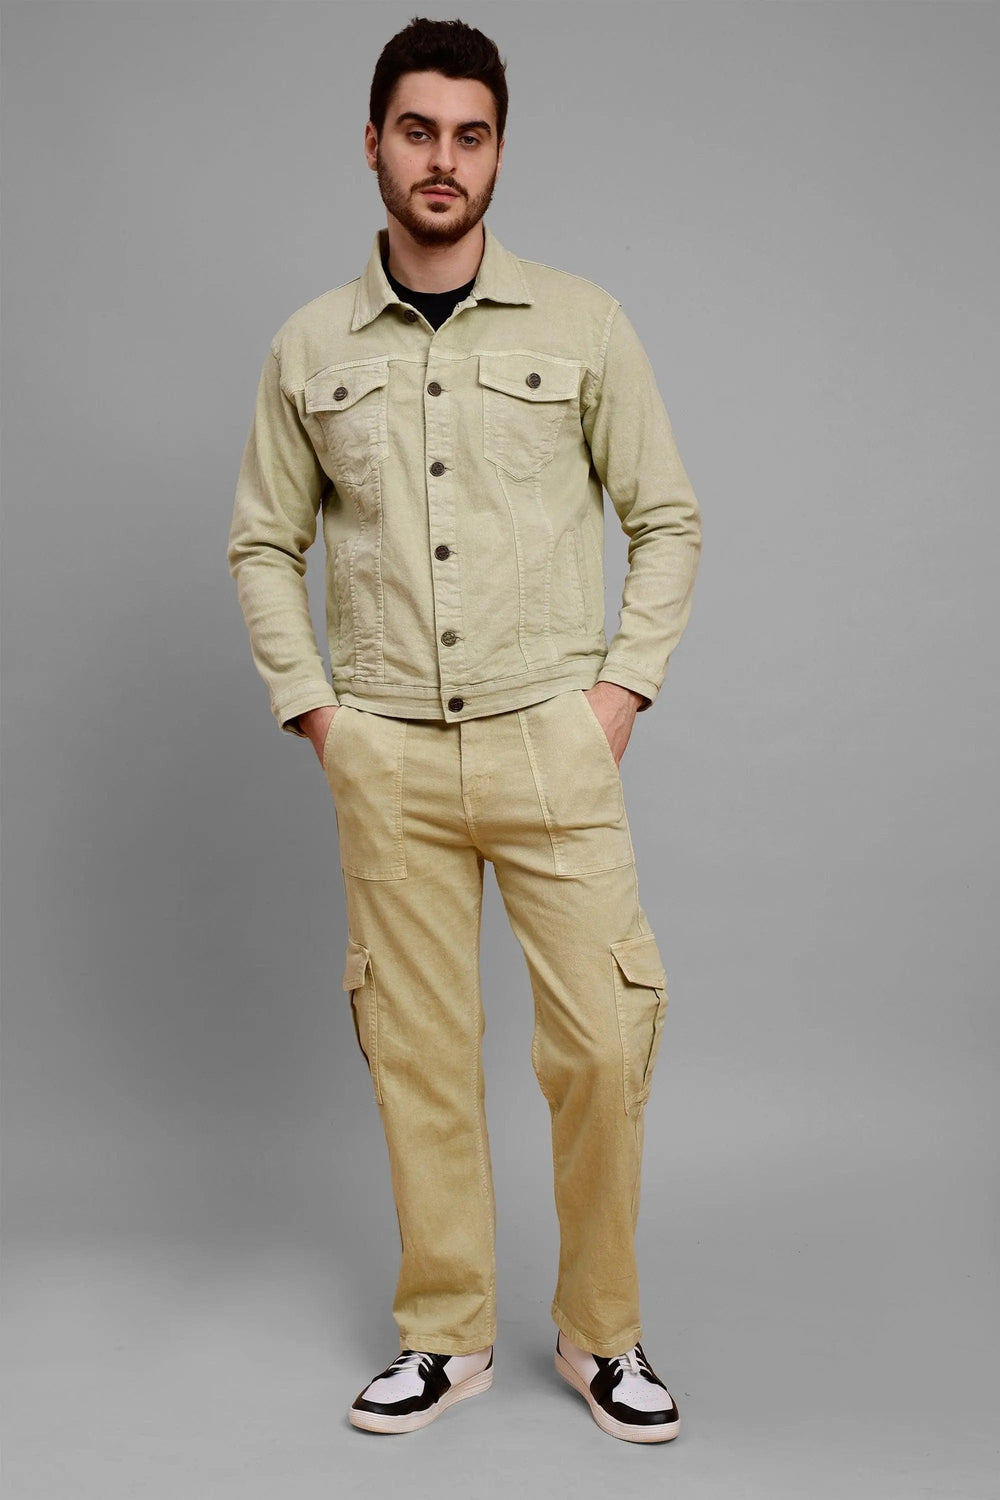 Regular Fit Pista Lime Denim Cargo & Jacket Co-ord Set for Men - Peplos Jeans 